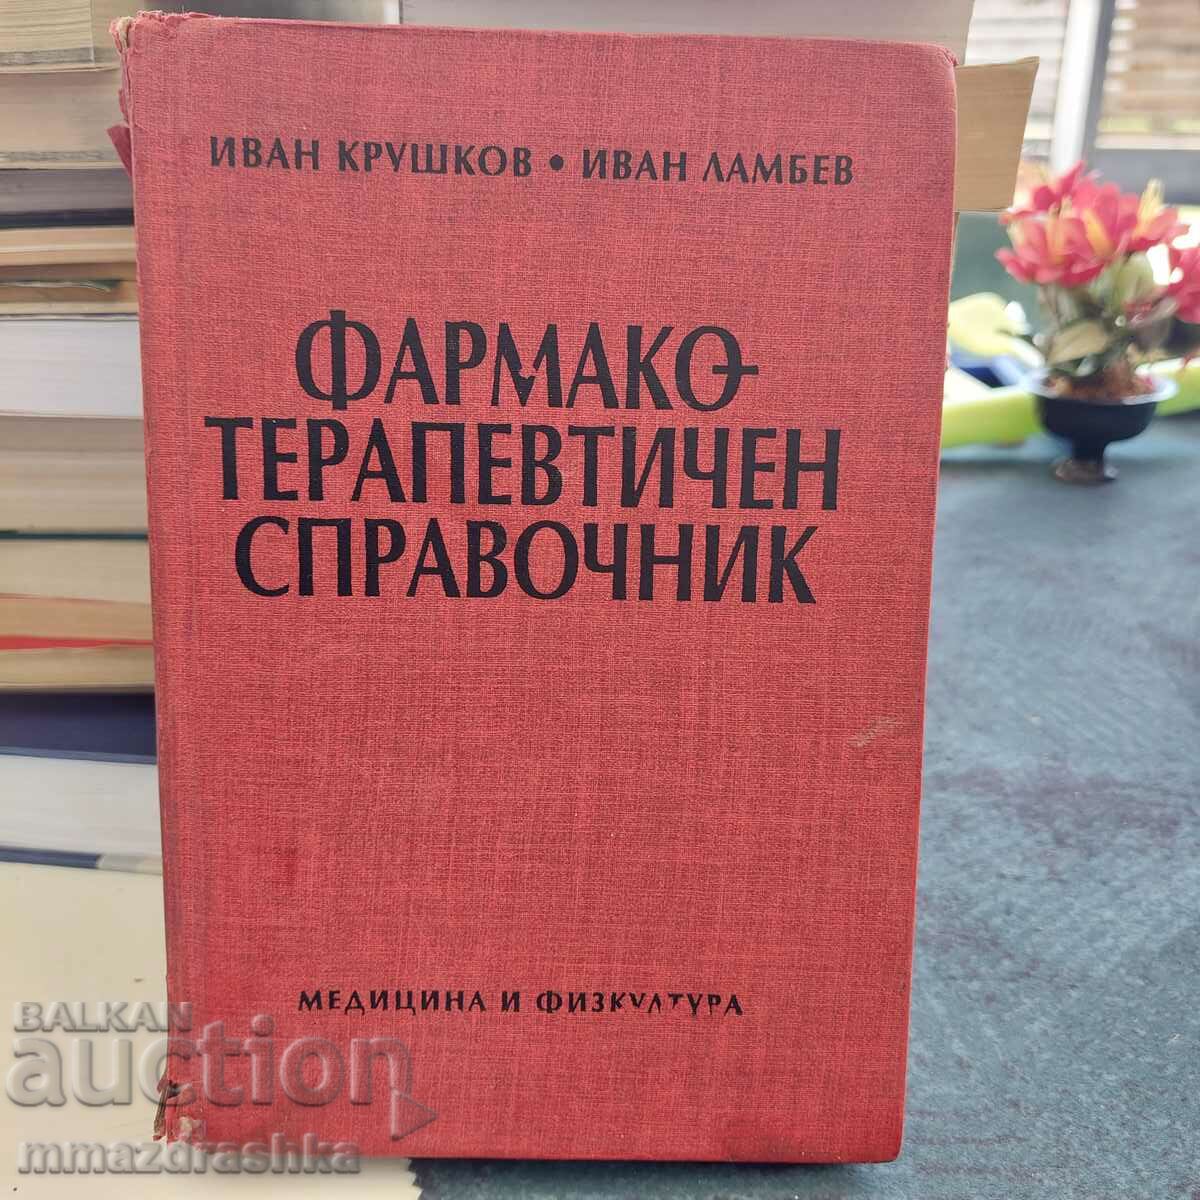 Pharmaco-therapeutic dictionary, I. Krushkov